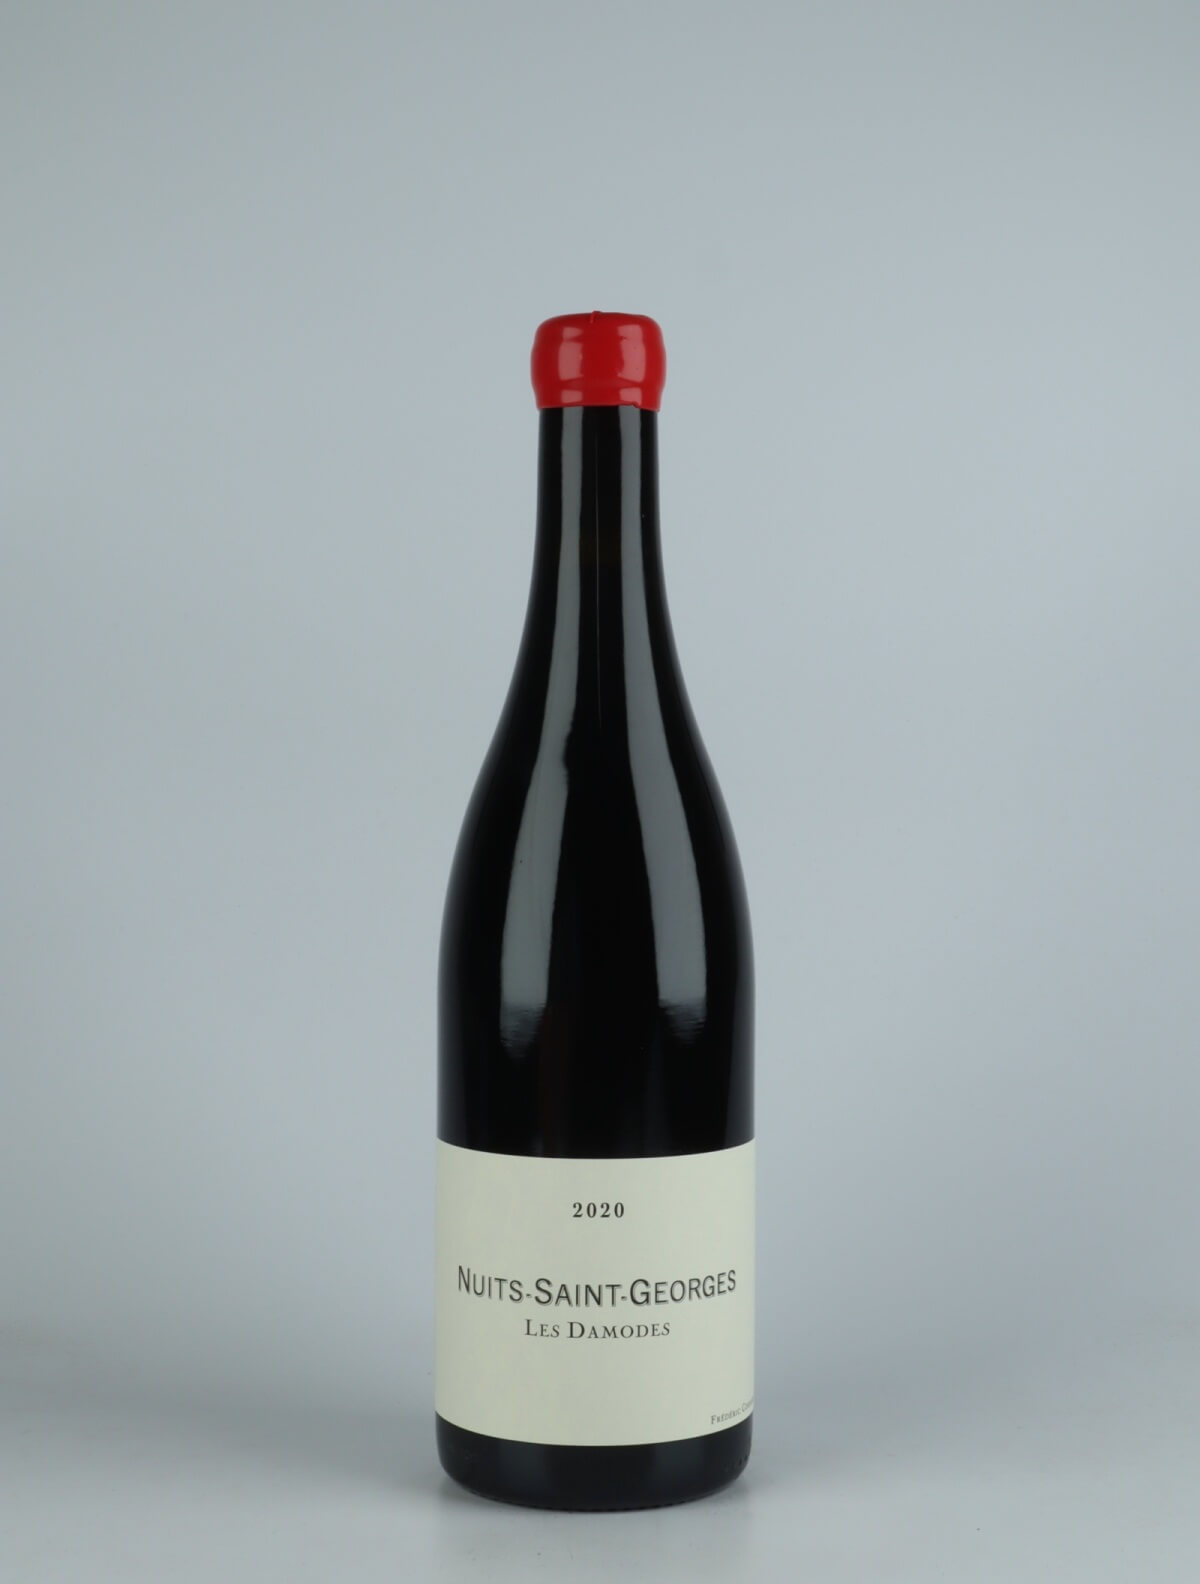 En flaske 2020 Nuits Saint Georges - Damodes Rødvin fra Frédéric Cossard, Bourgogne i Frankrig